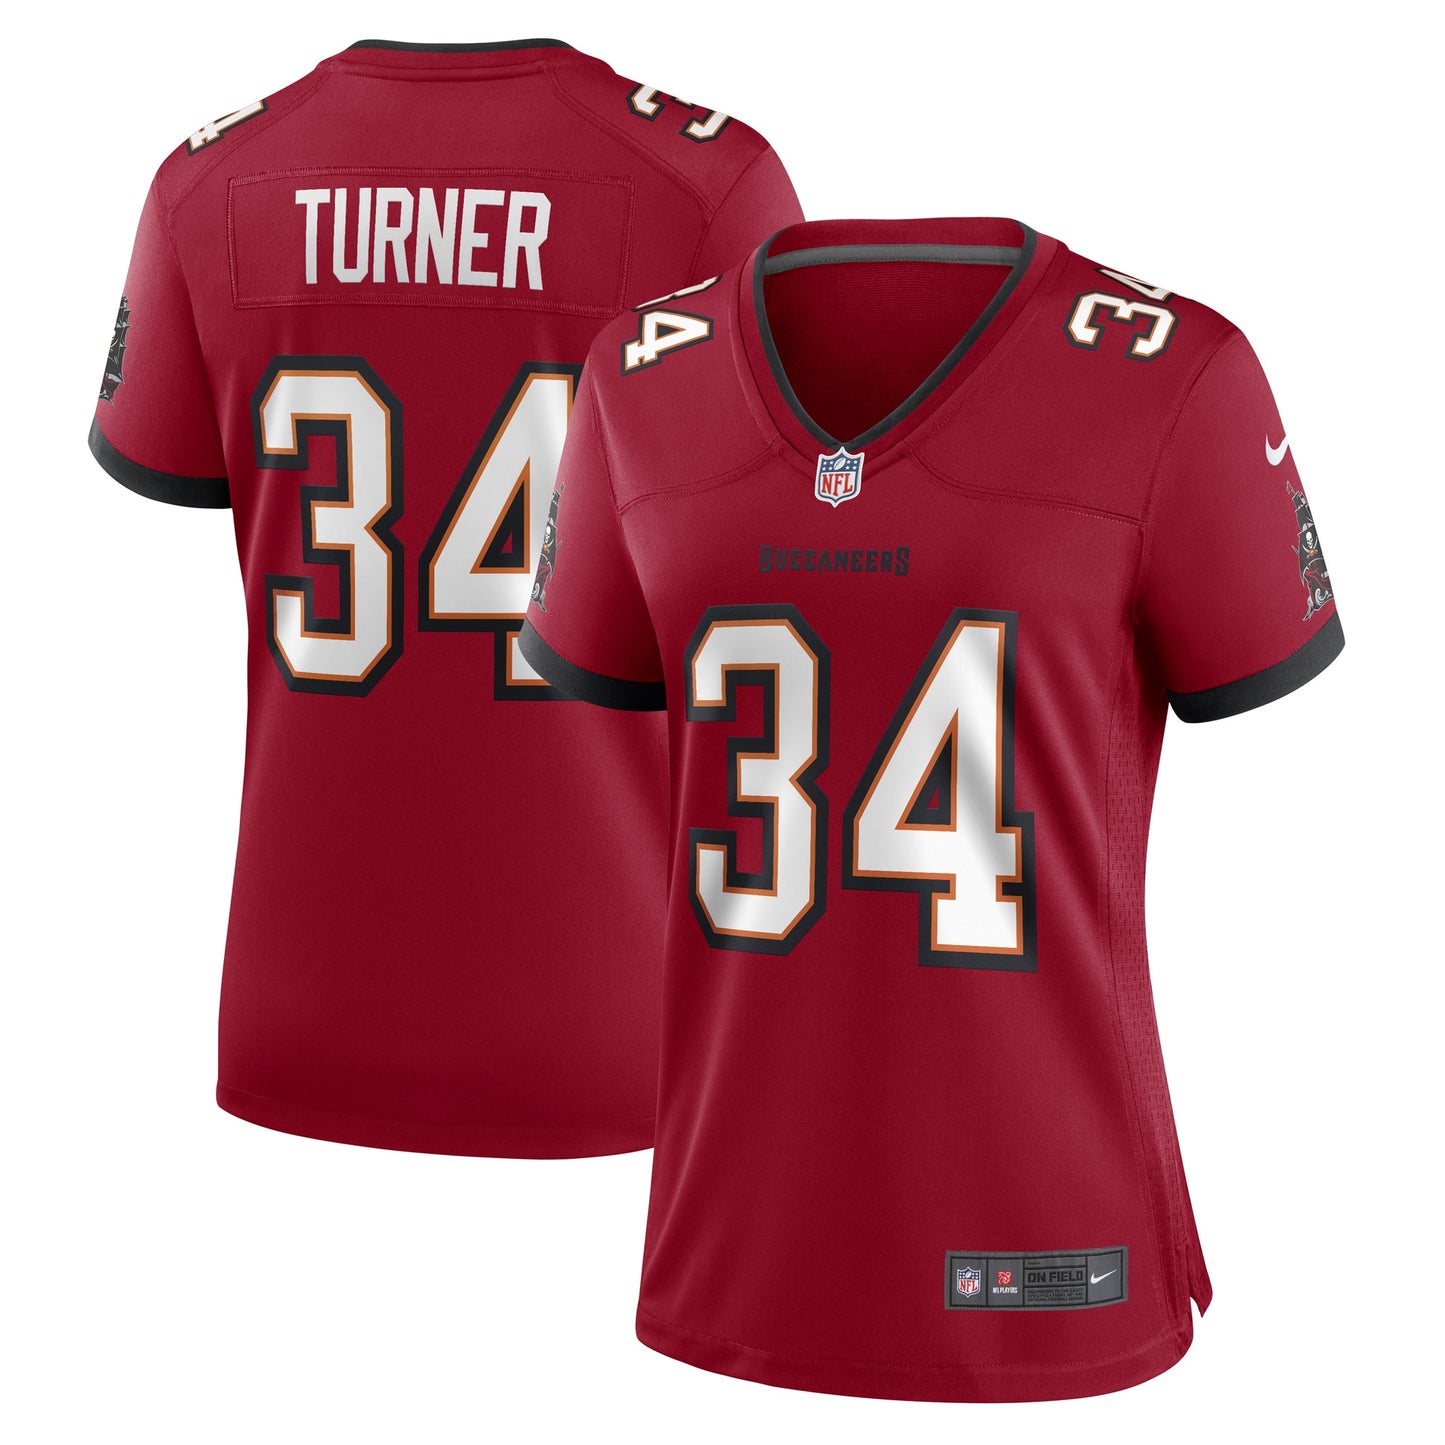 Nolan Turner Tampa Bay Buccaneers Nike Women's Game Player Jersey - Red